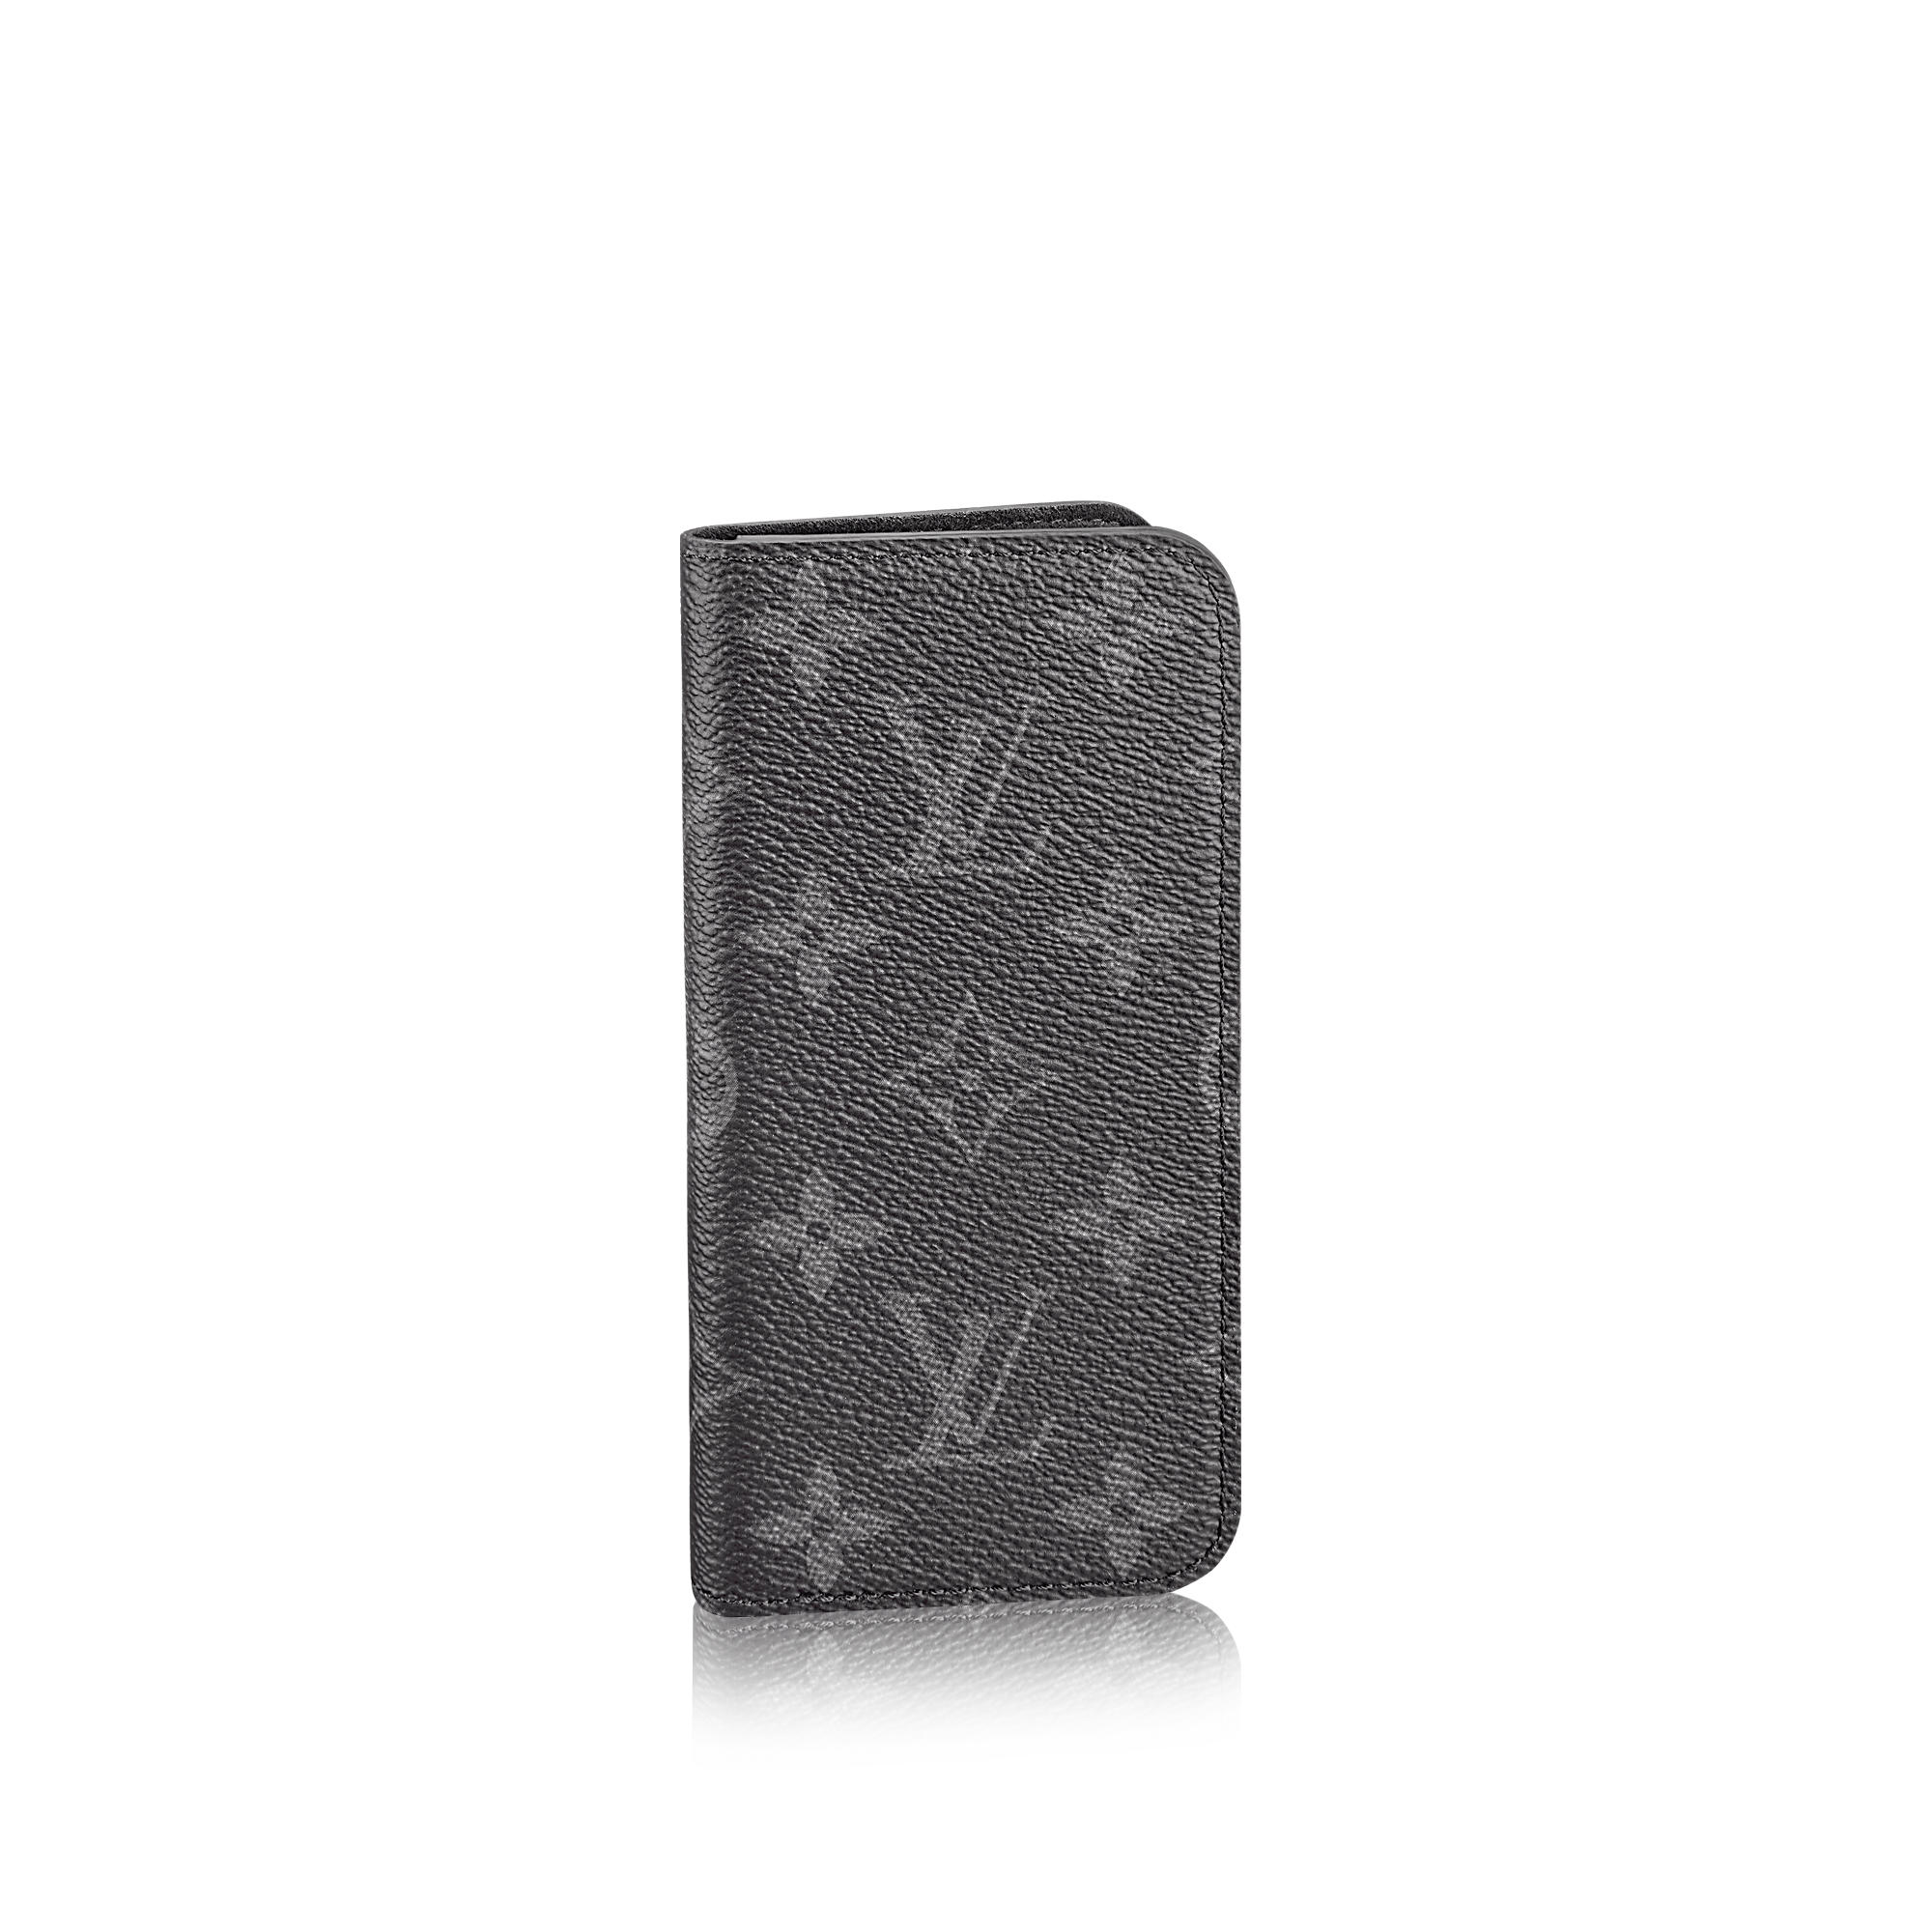 Louis Vuitton iPhone 7 8 Folio Case in Monogram - New -SOLD